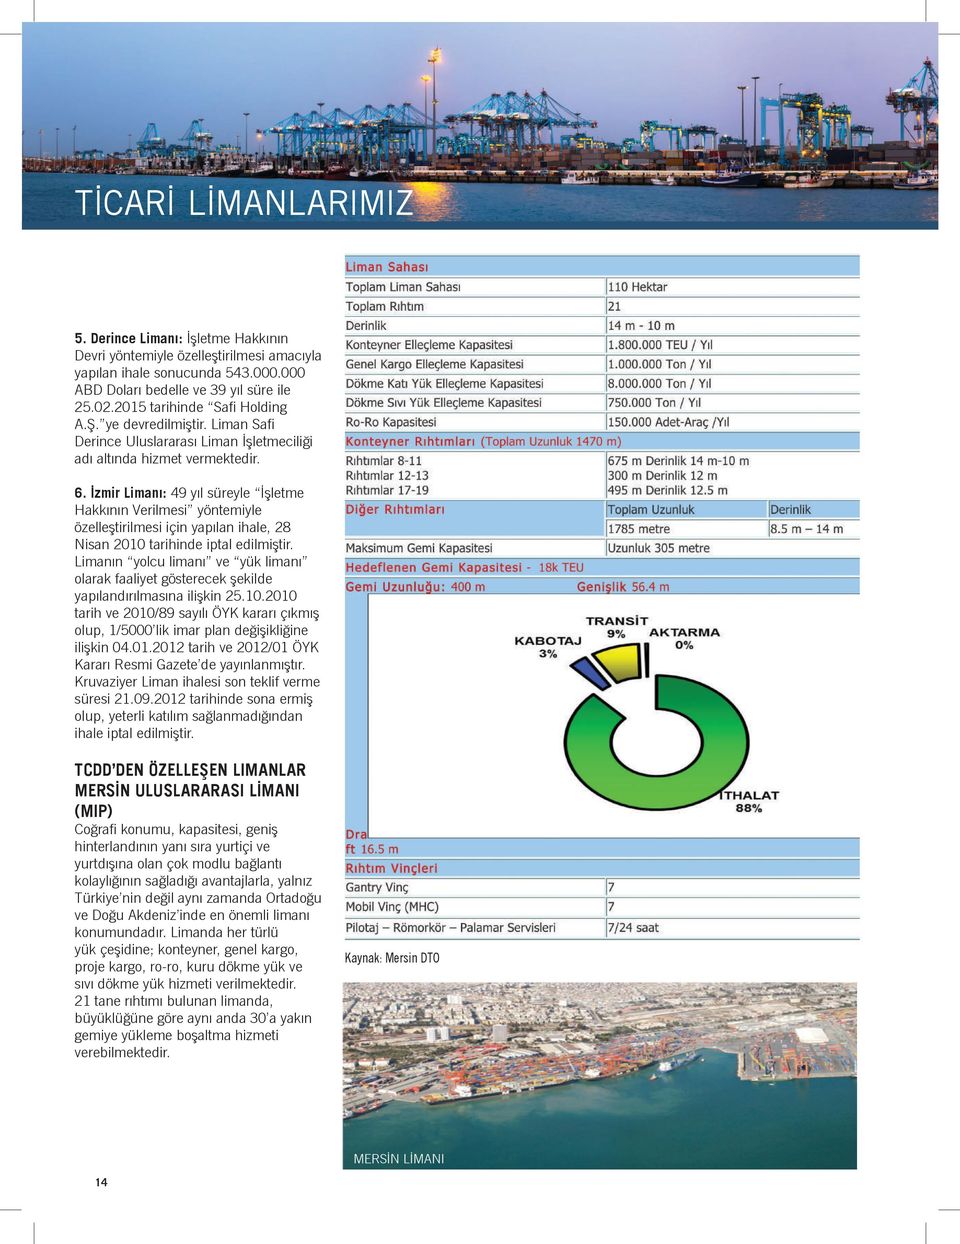 İzmir Limanı: 49 yıl süreyle İşletme Hakkının Verilmesi yöntemiyle özelleştirilmesi için yapılan ihale, 28 Nisan 2010 tarihinde iptal edilmiştir.